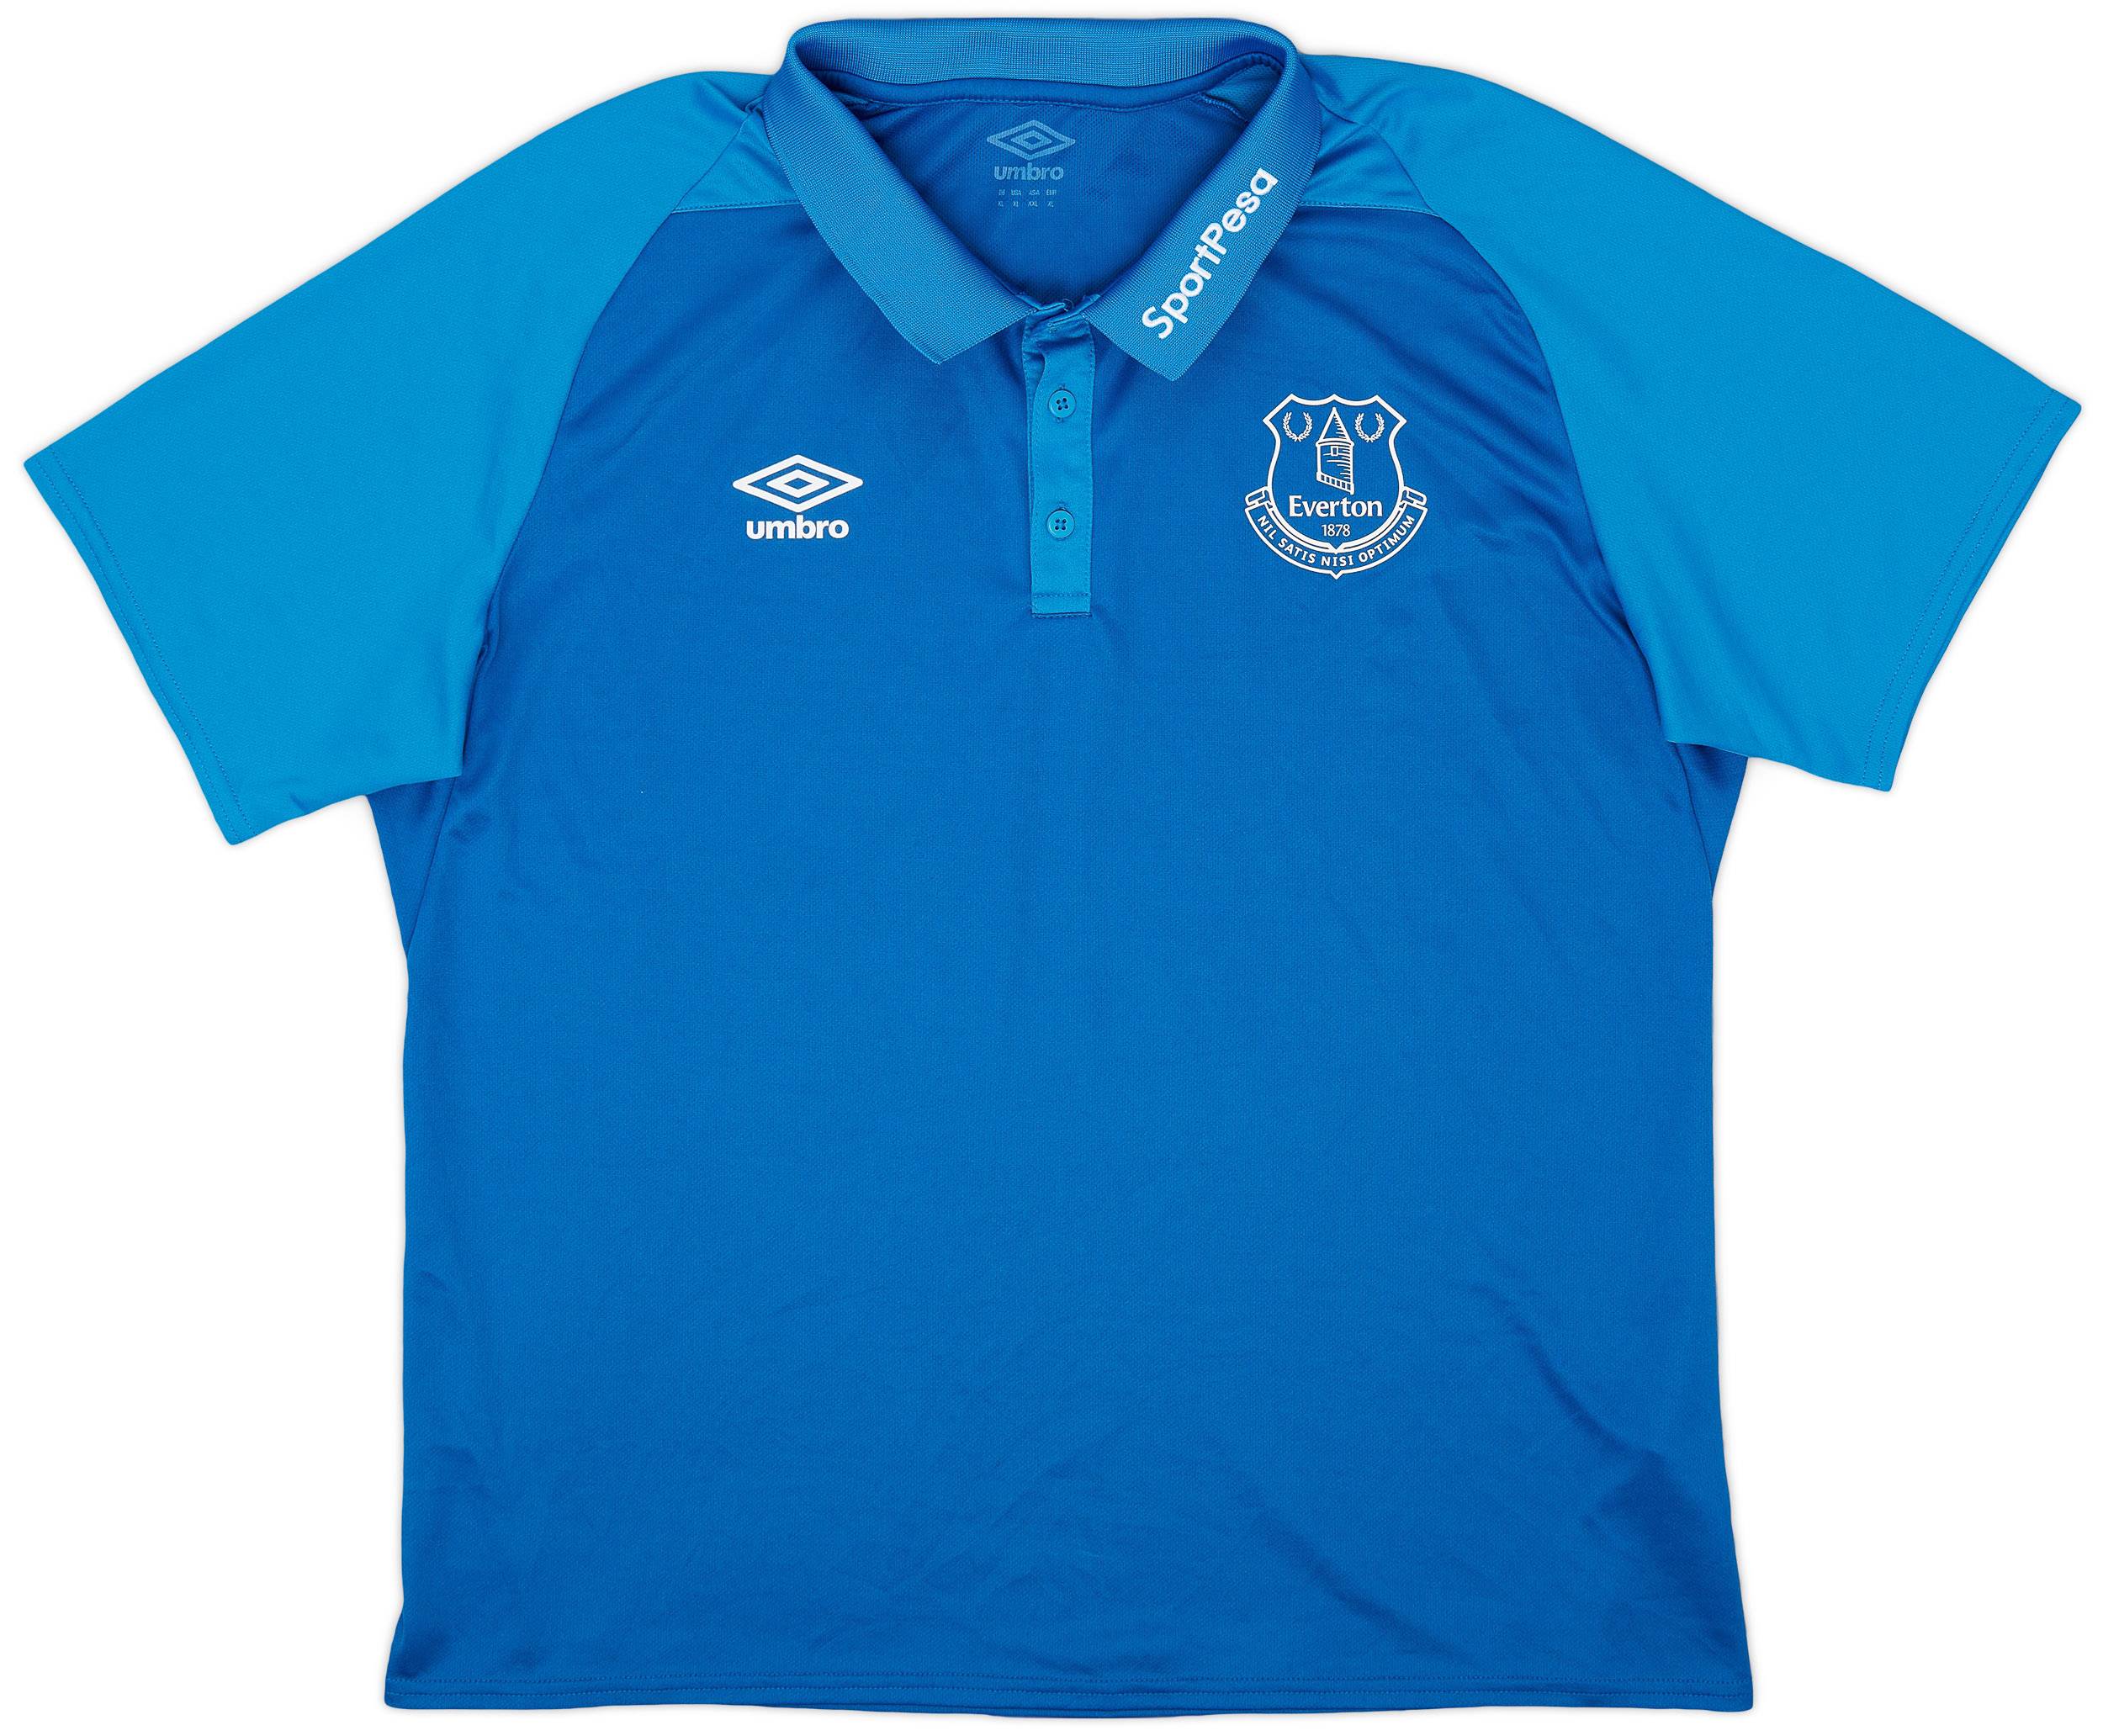 2017-18 Everton Umbro Polo Shirt - 9/10 - (XL)